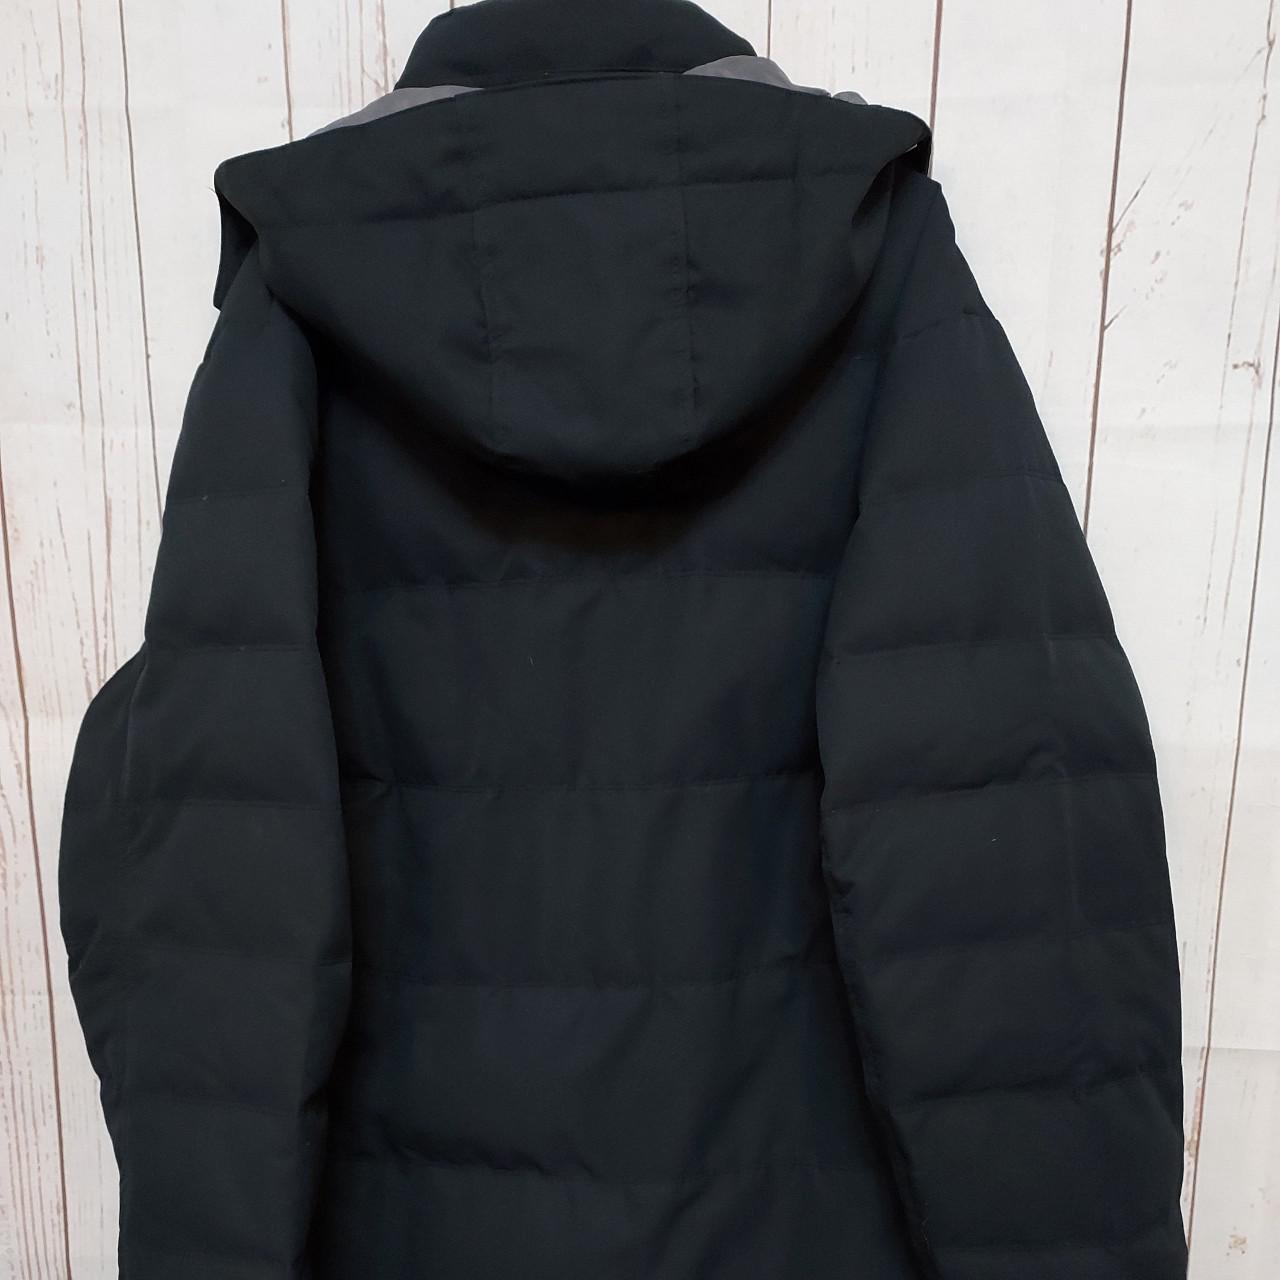 Product Image 2 - Stunning Tog24 size XL jacket